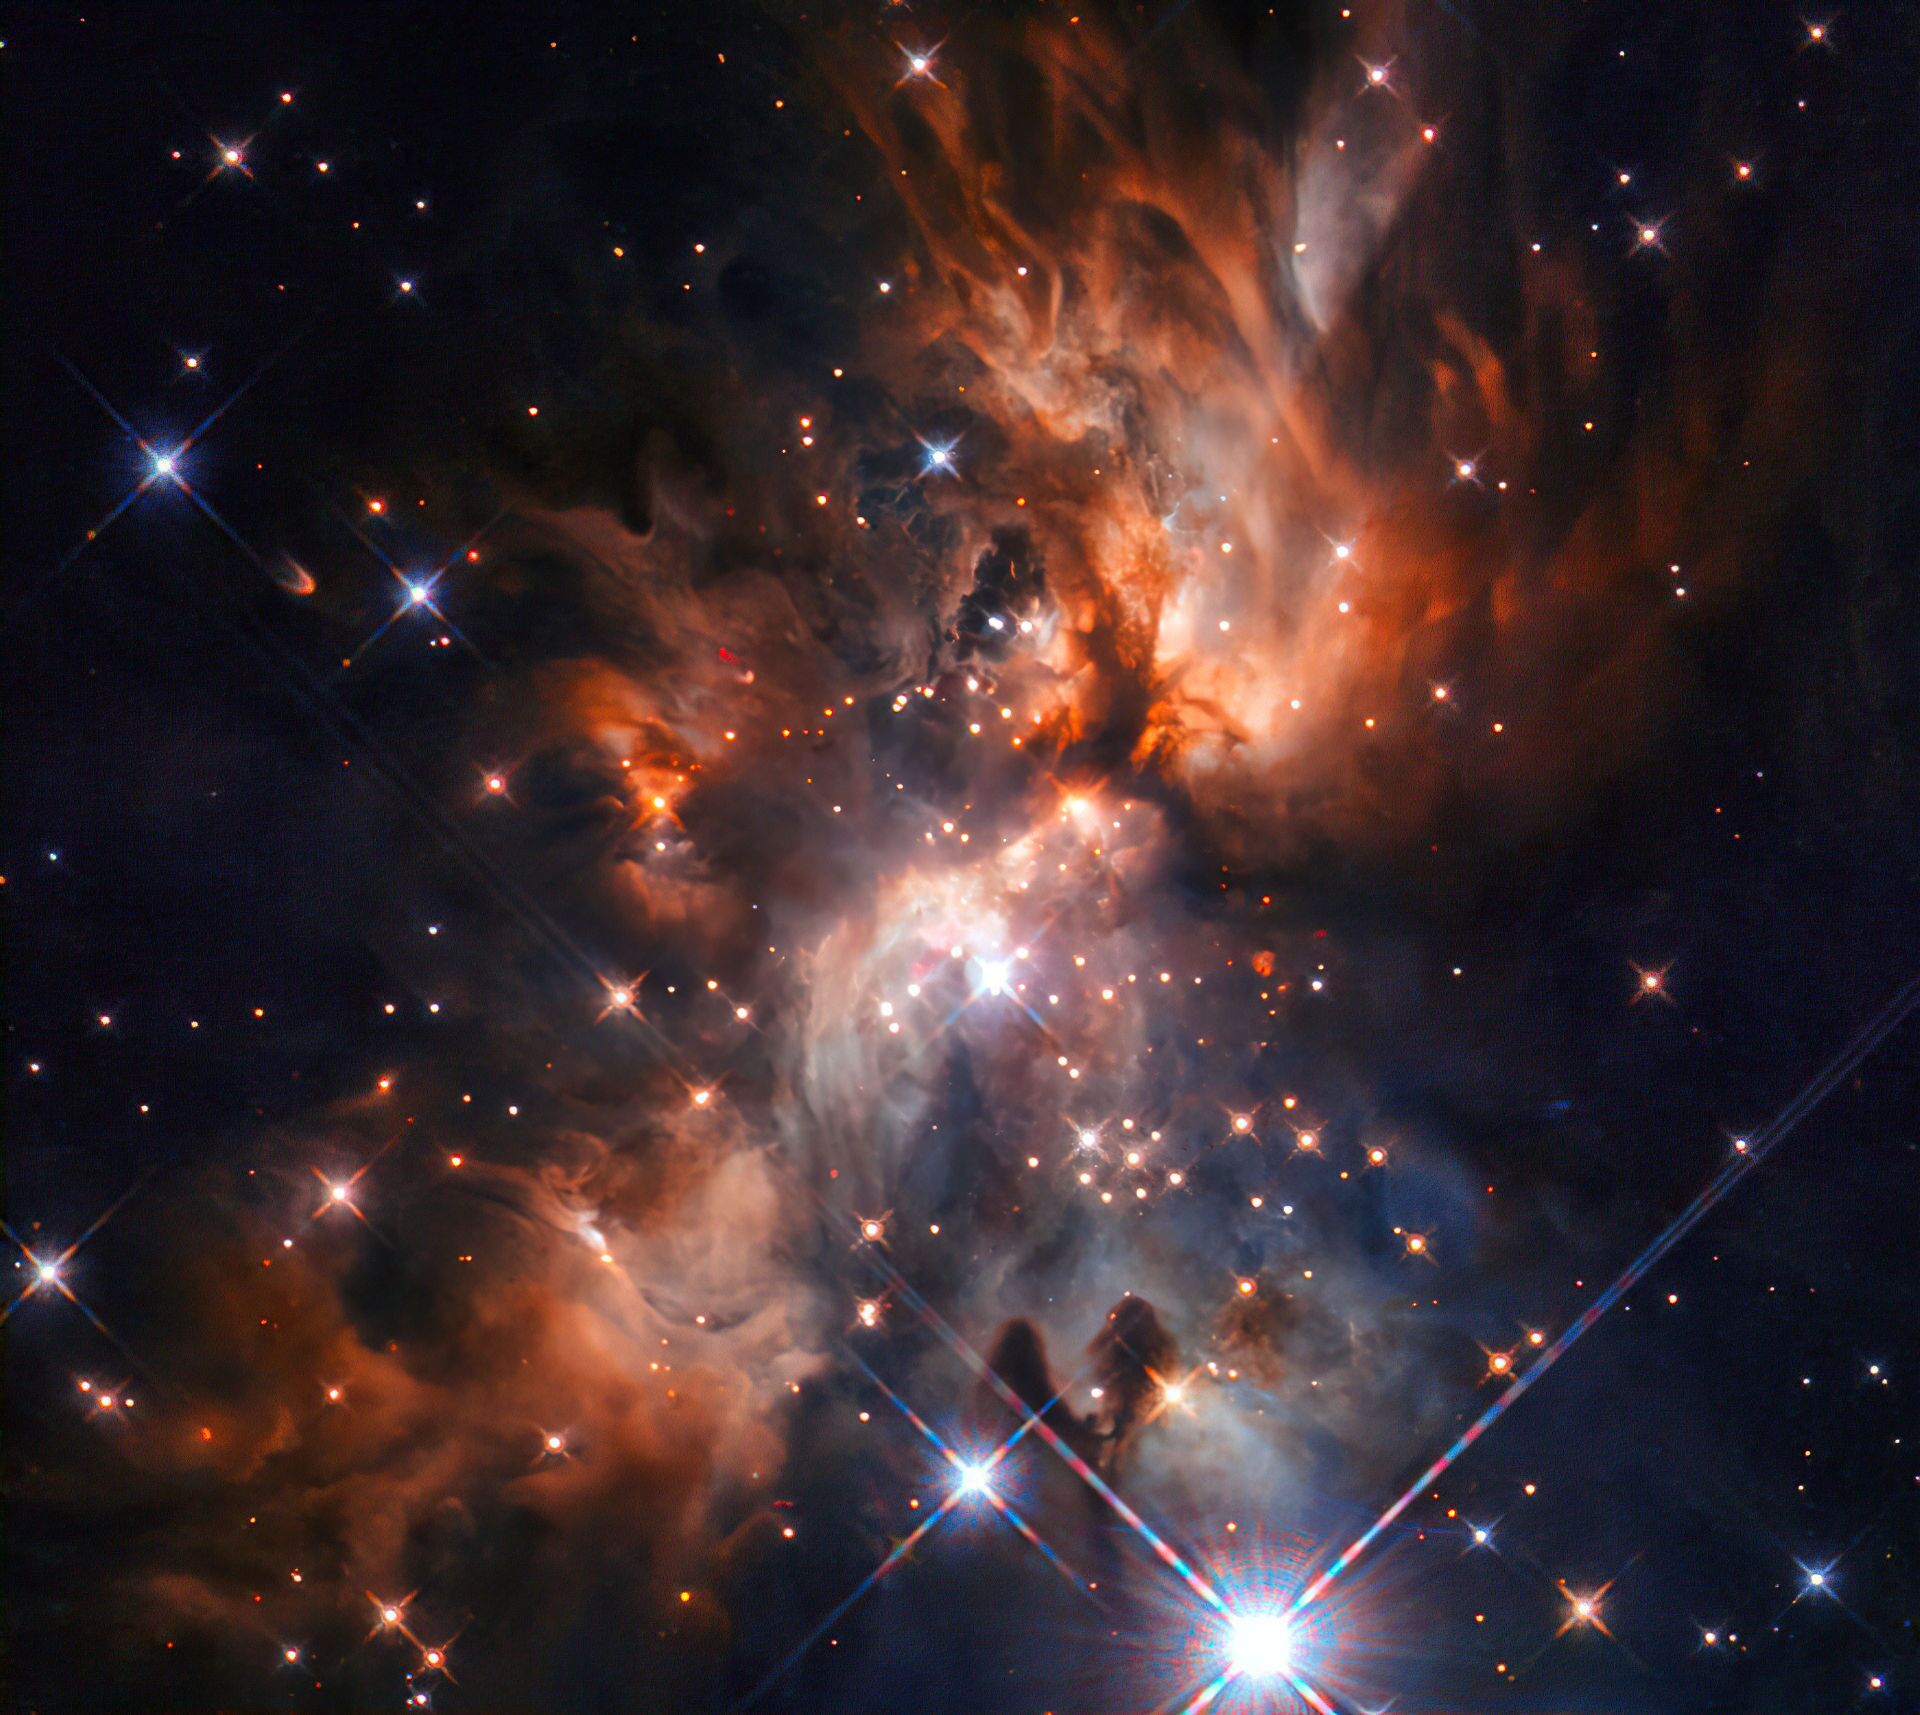 'Berçário de estrelas' é registrado pelo telescópio Hubble na constelação de Gêmeos (FOTO) - Sputnik Brasil, 1920, 14.08.2021